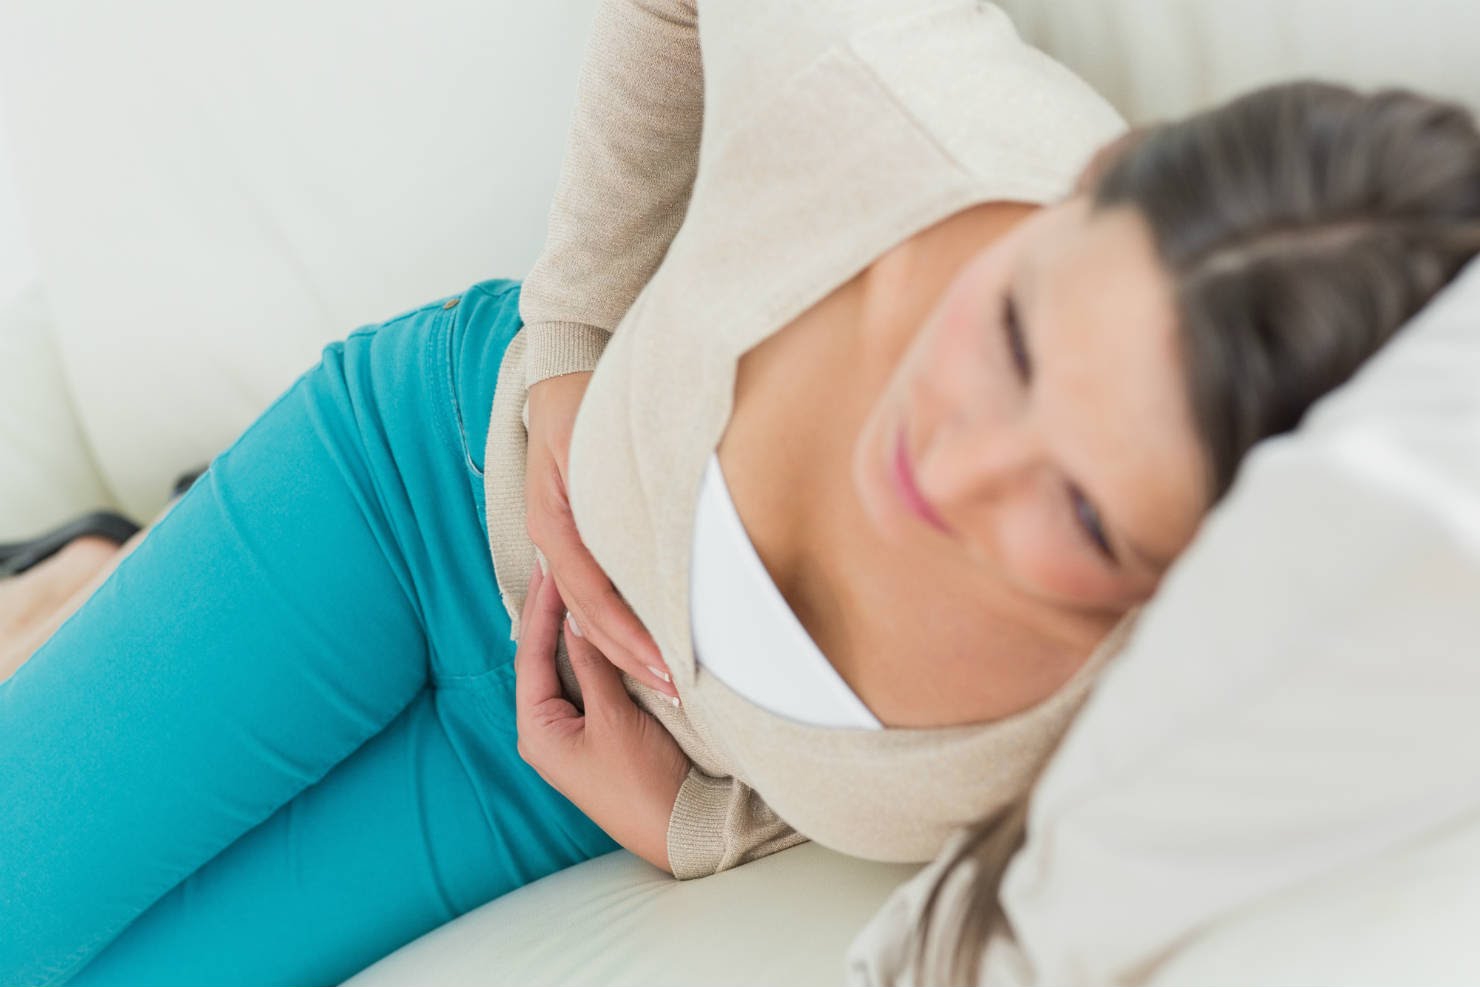 Những biểu hiện xảy ra trong cơ thể khi bị đau bụng kinh và khi có thai?
